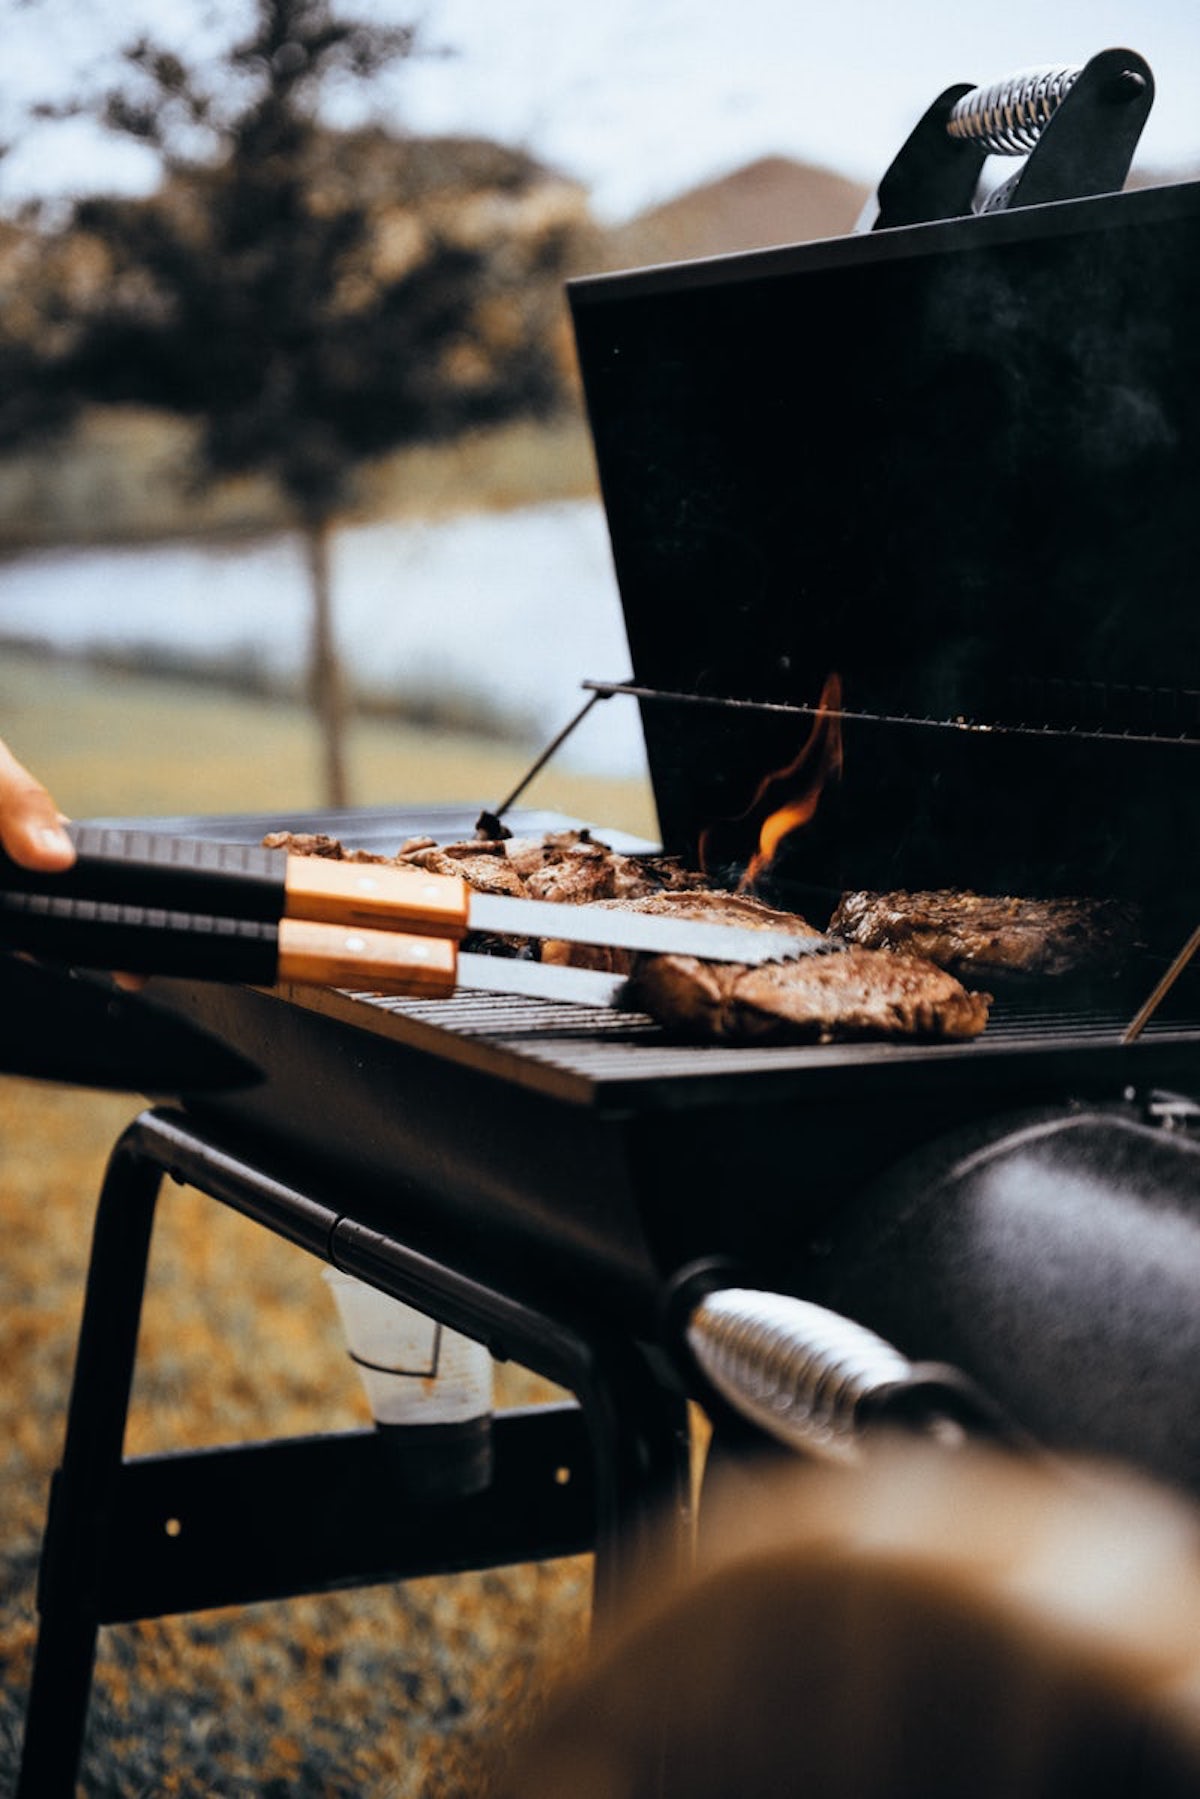 fabriquer un barbecue diy fonte noire steak extérieur jardin diner repas feu grillade déco décoration clematc